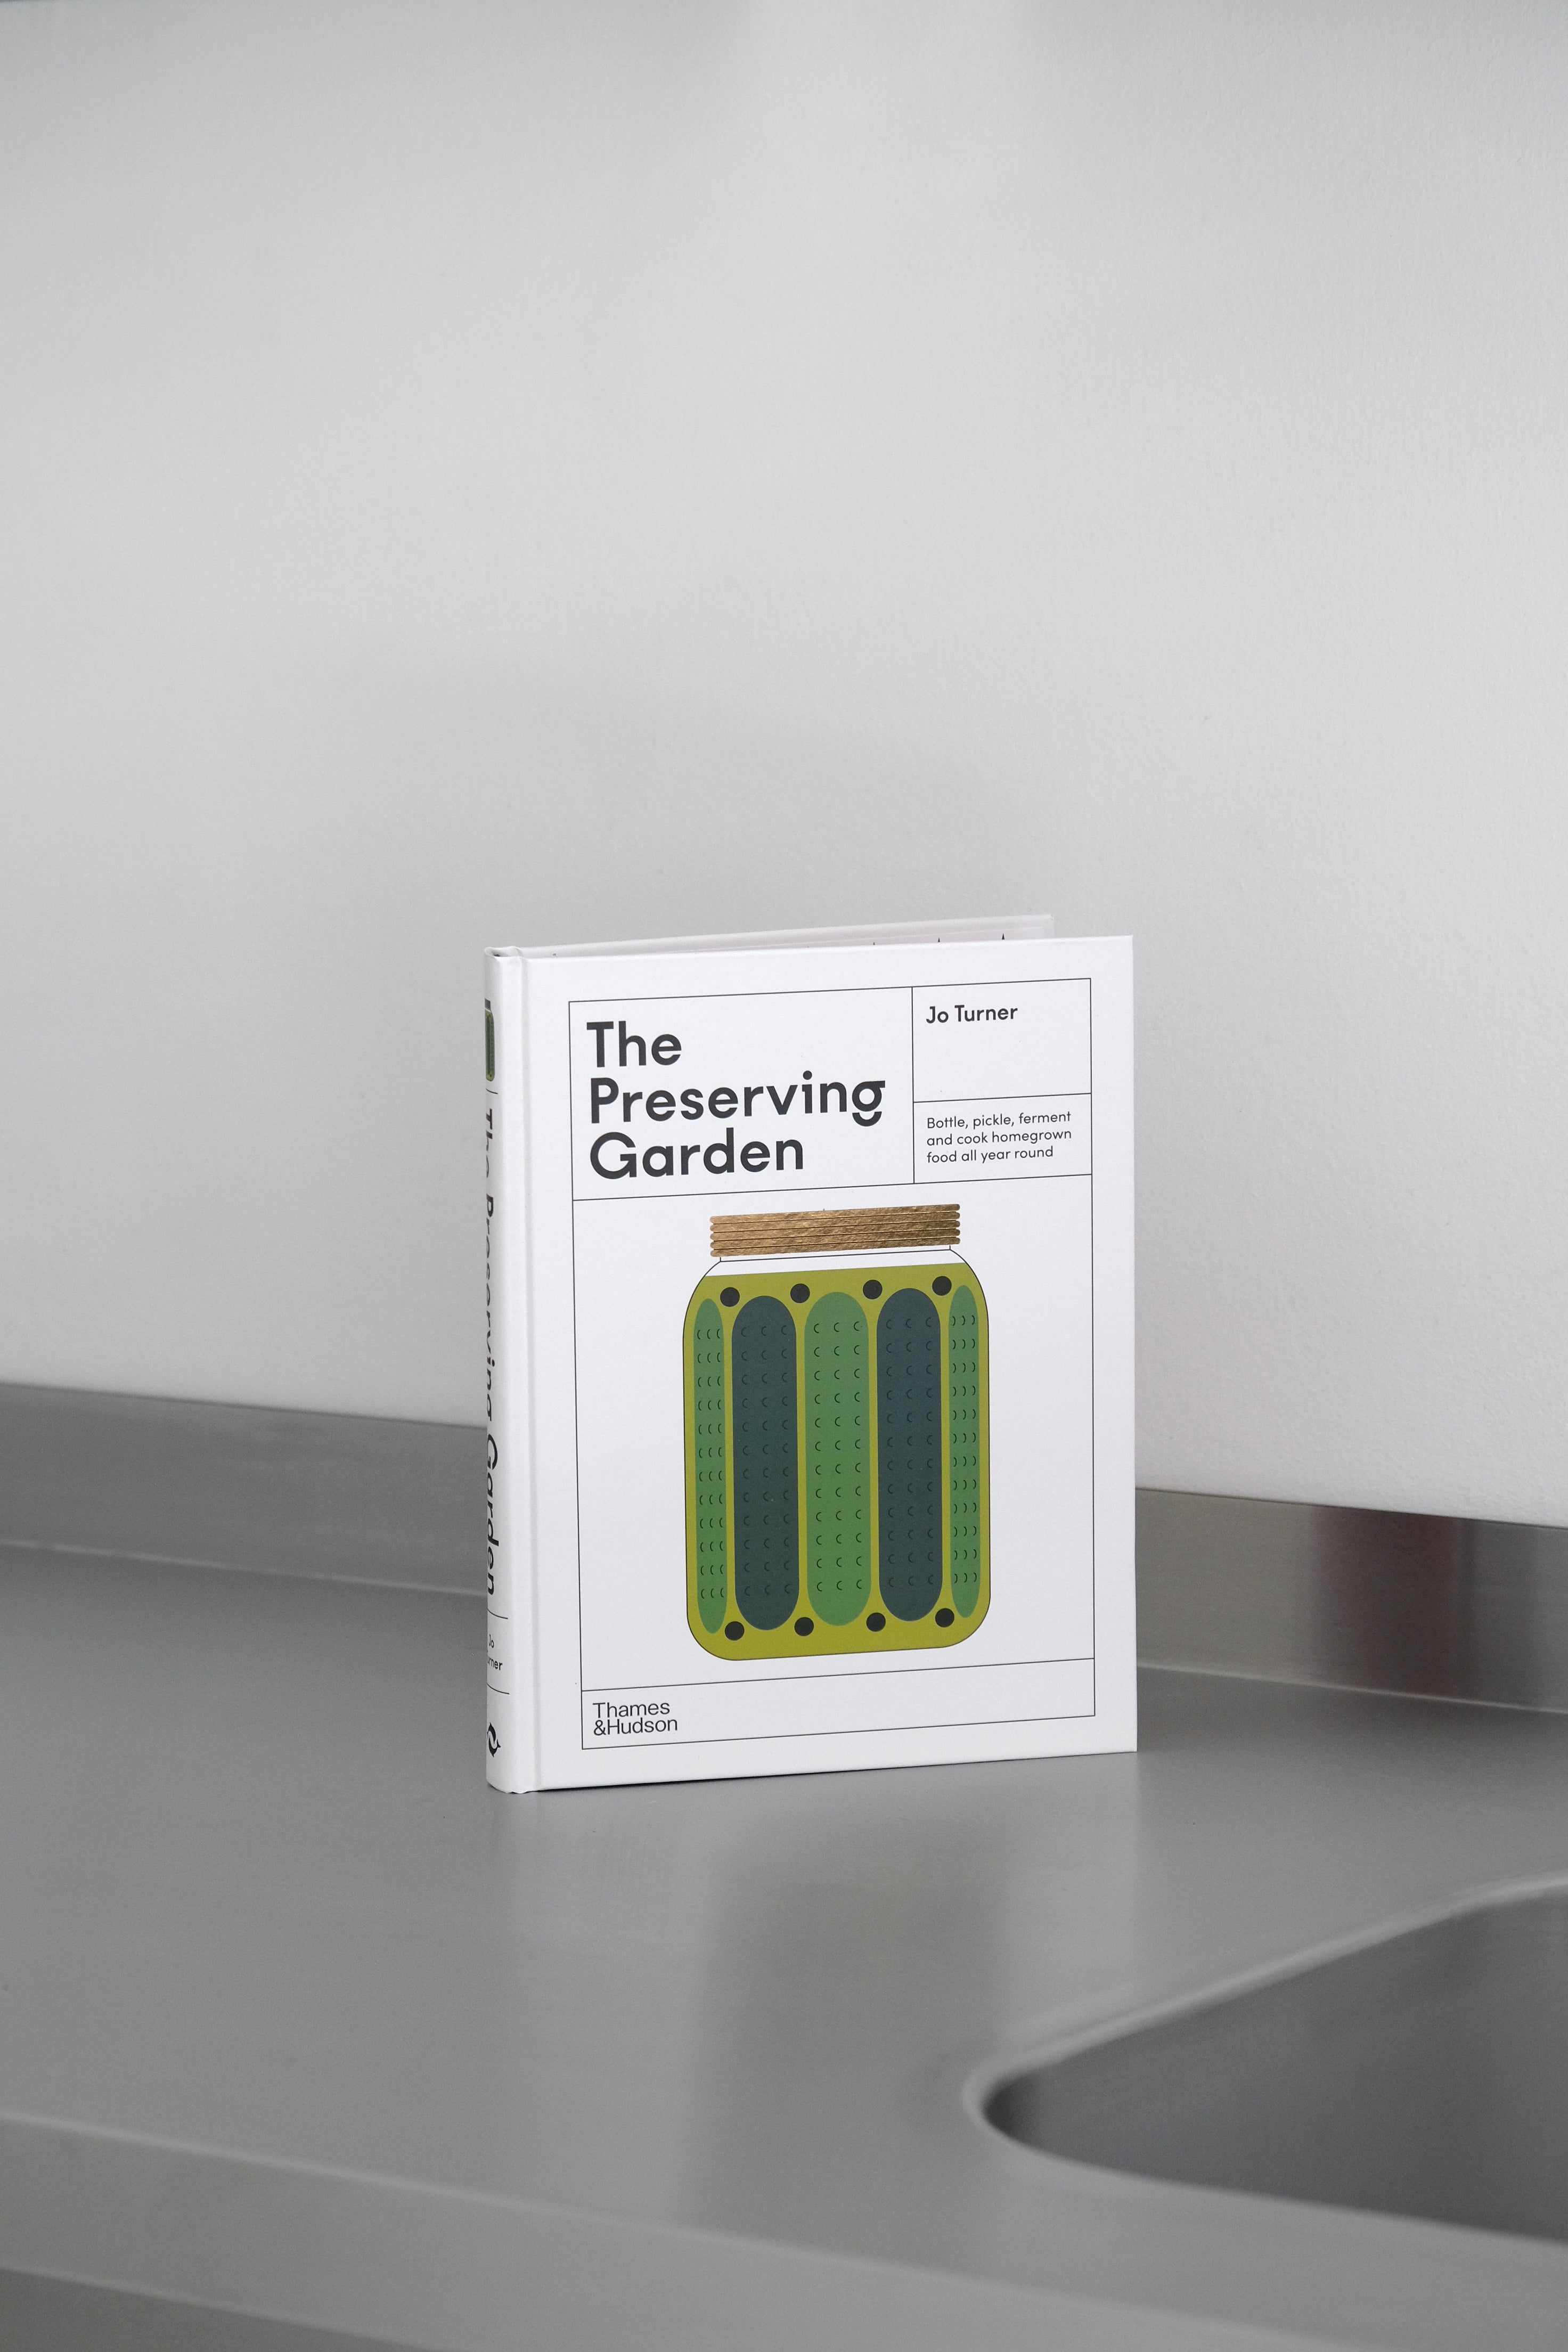 The Preserving Garden-Thames & Hudson-KIOSK48TH